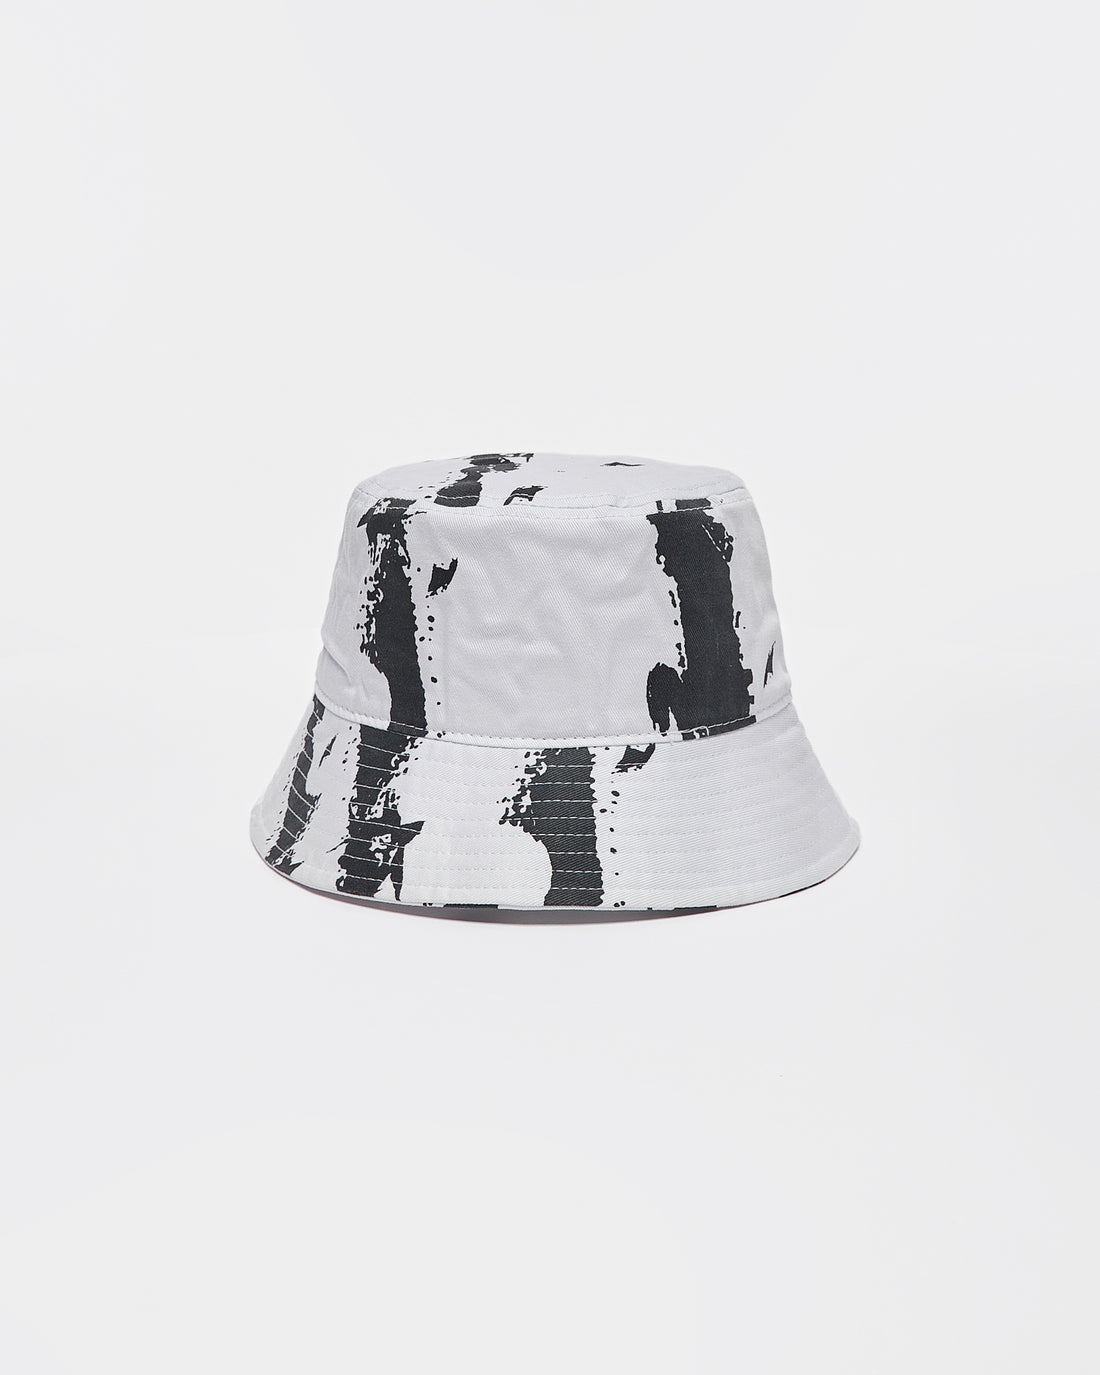 AMQ Ink Splash Black White Bucket Hat 12.90